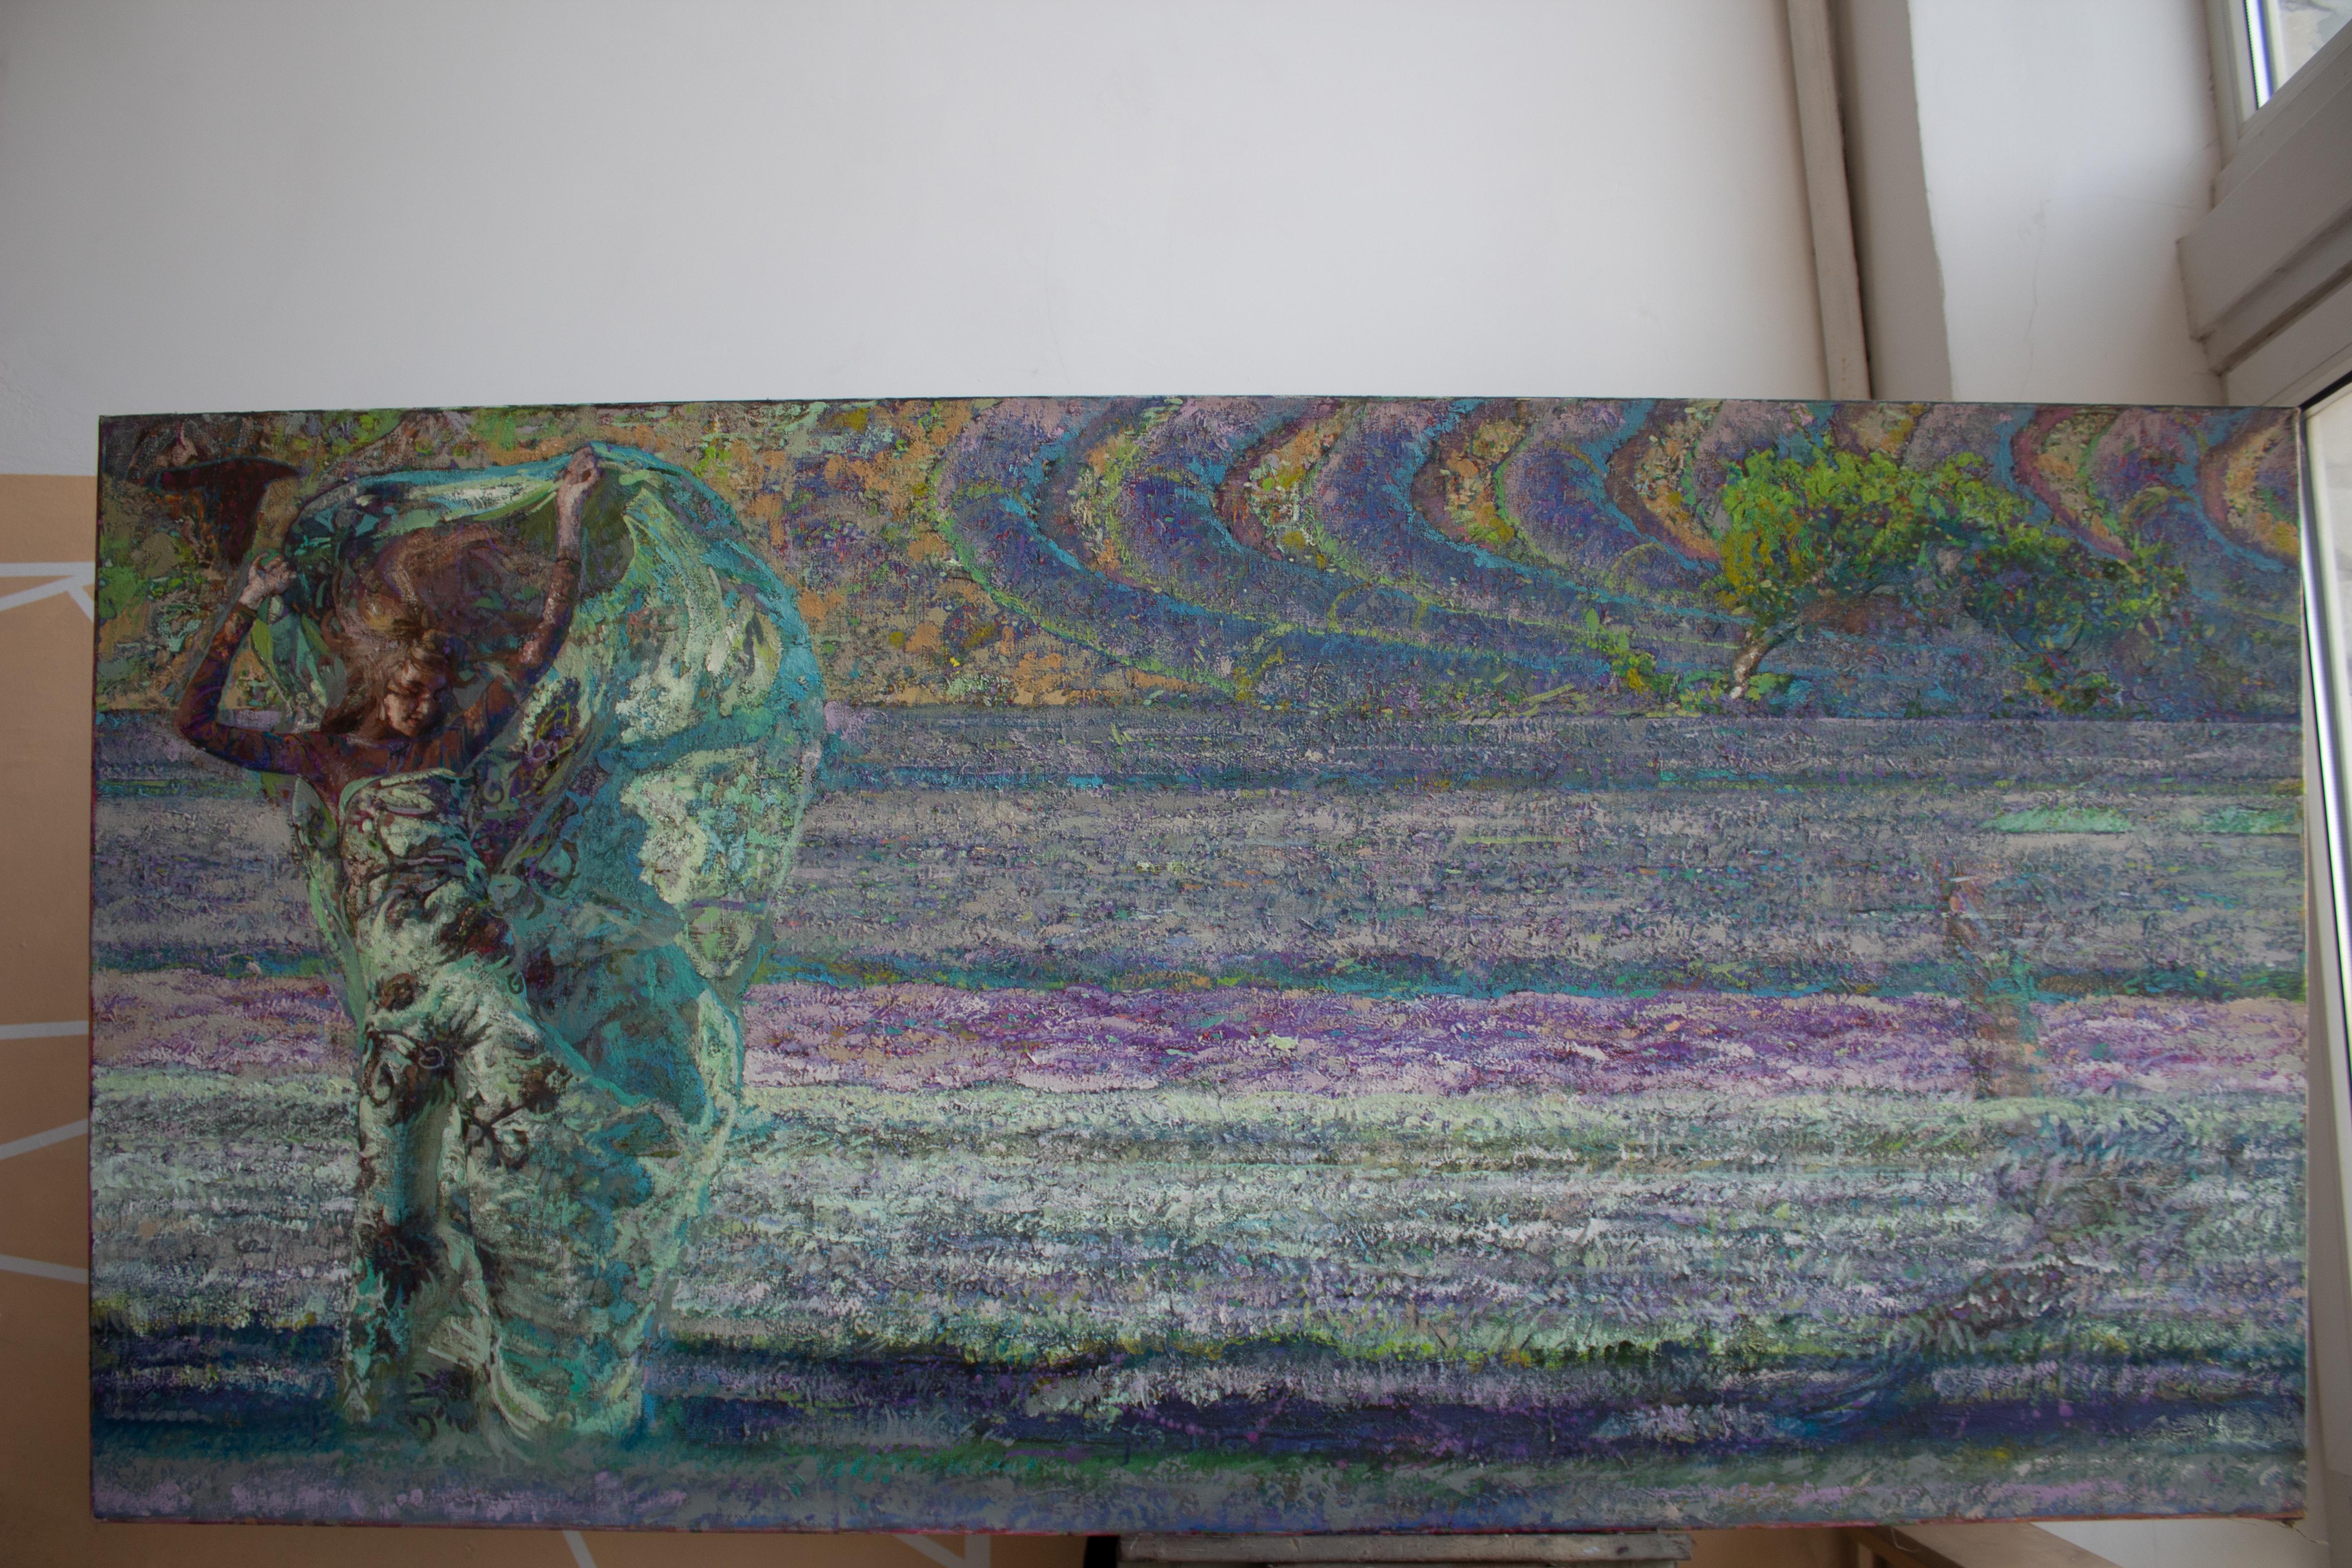  Mistral Vincent - Peinture à l'huile - Paysage - Couleurs Violet Vert Marron Bleu Blanc - Impressionnisme Painting par Alexandr Reznichenko